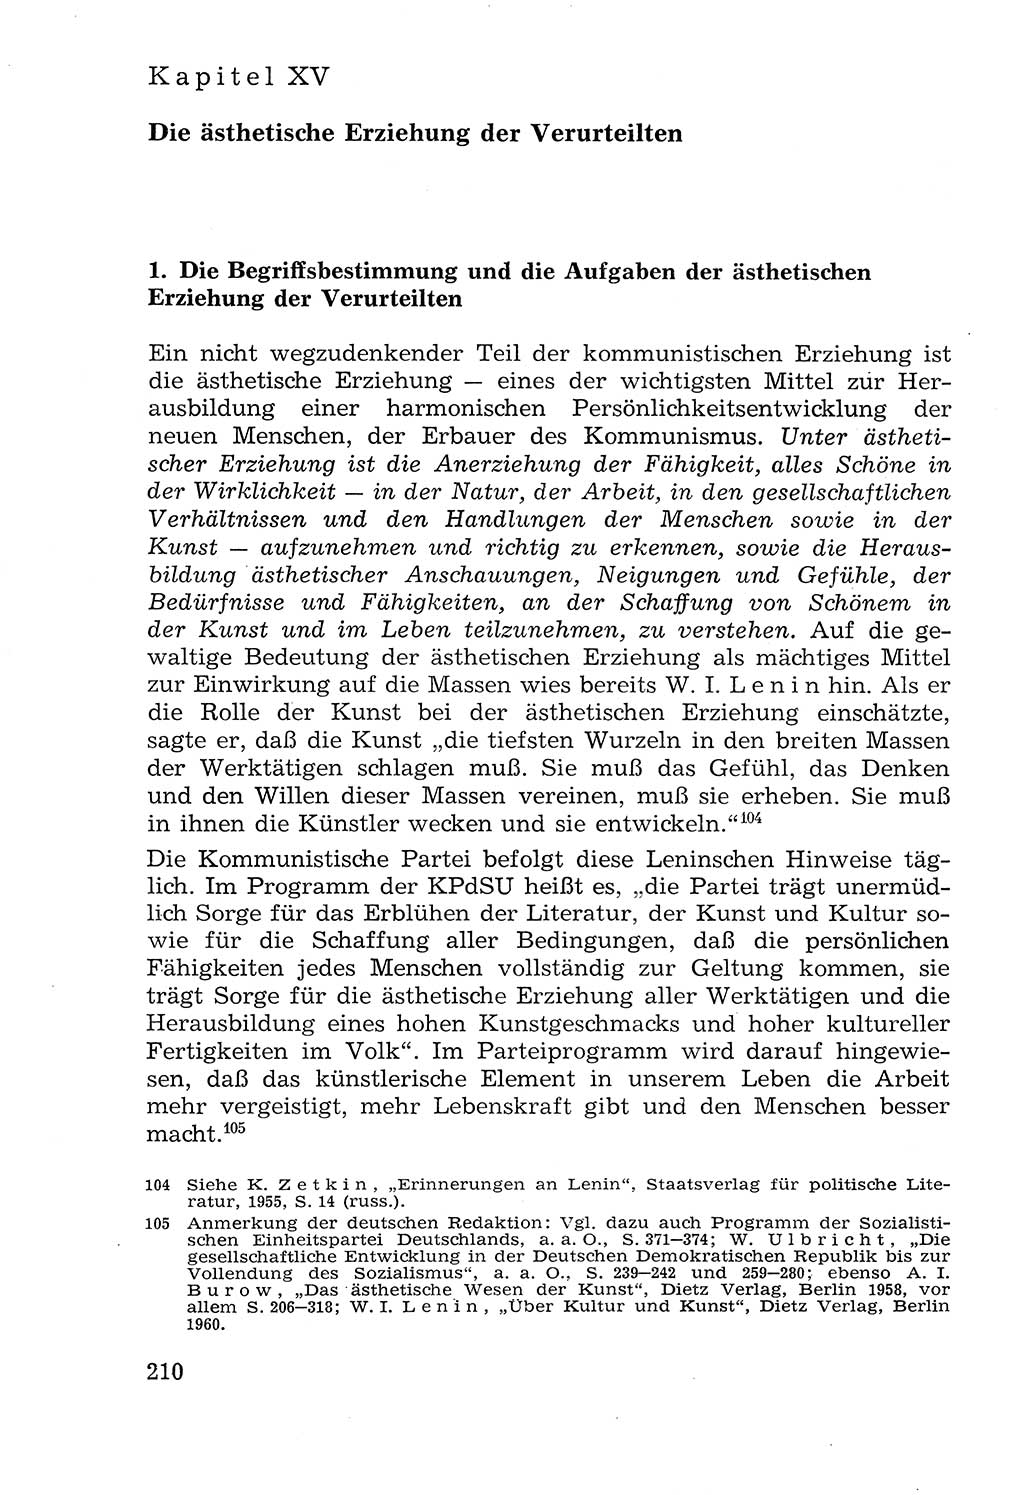 Lehrbuch der Strafvollzugspädagogik [Deutsche Demokratische Republik (DDR)] 1969, Seite 210 (Lb. SV-Pd. DDR 1969, S. 210)